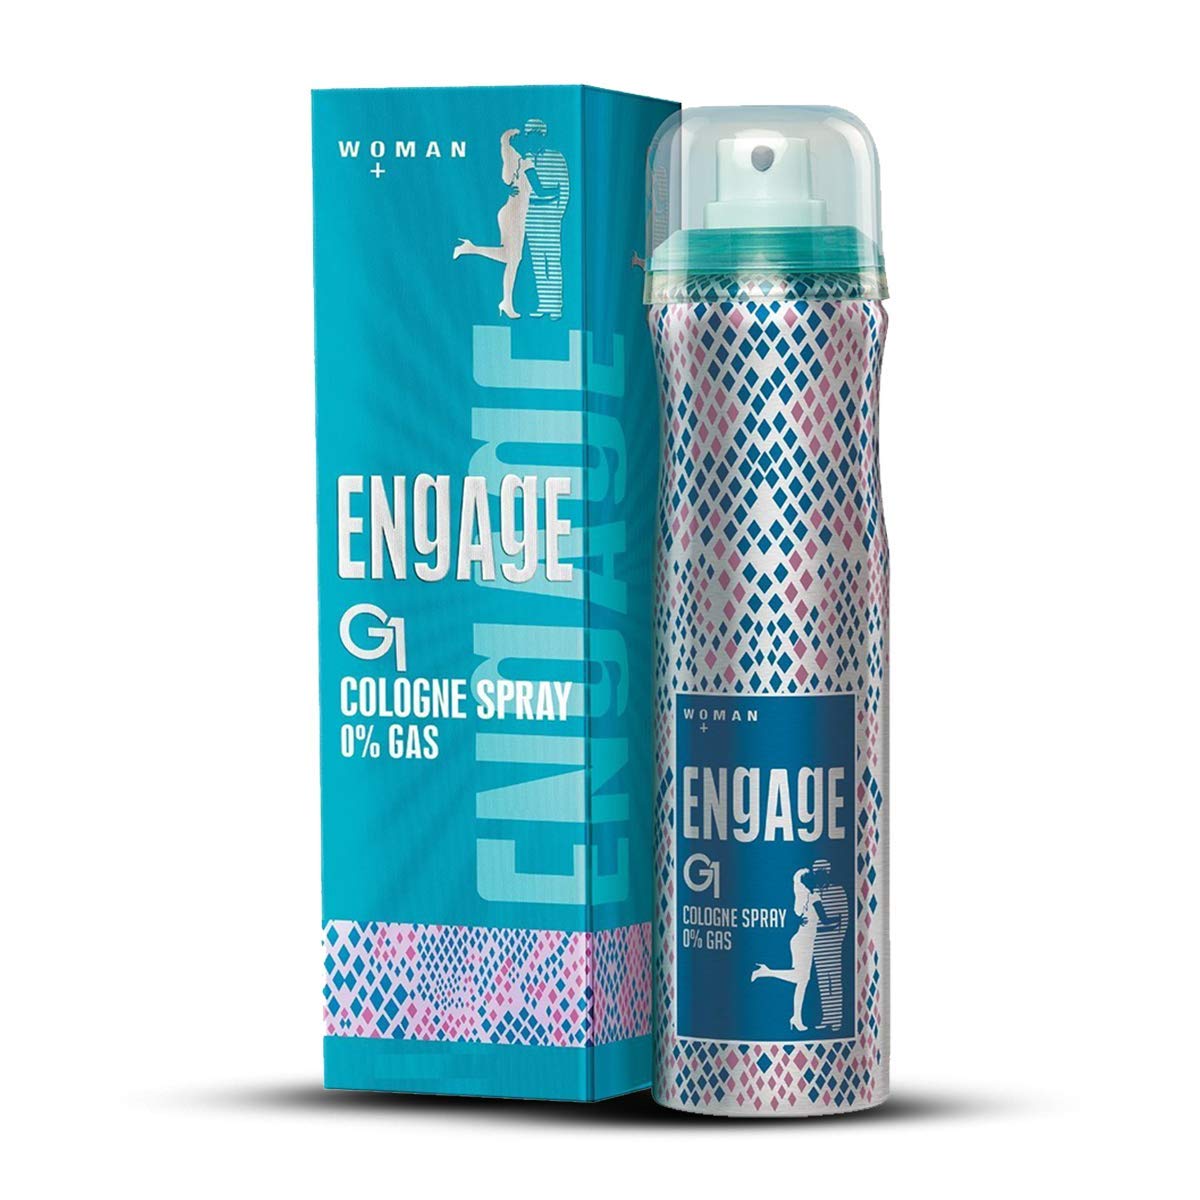 Engage Woman Cologne Spray G1 (135ml) - Niram